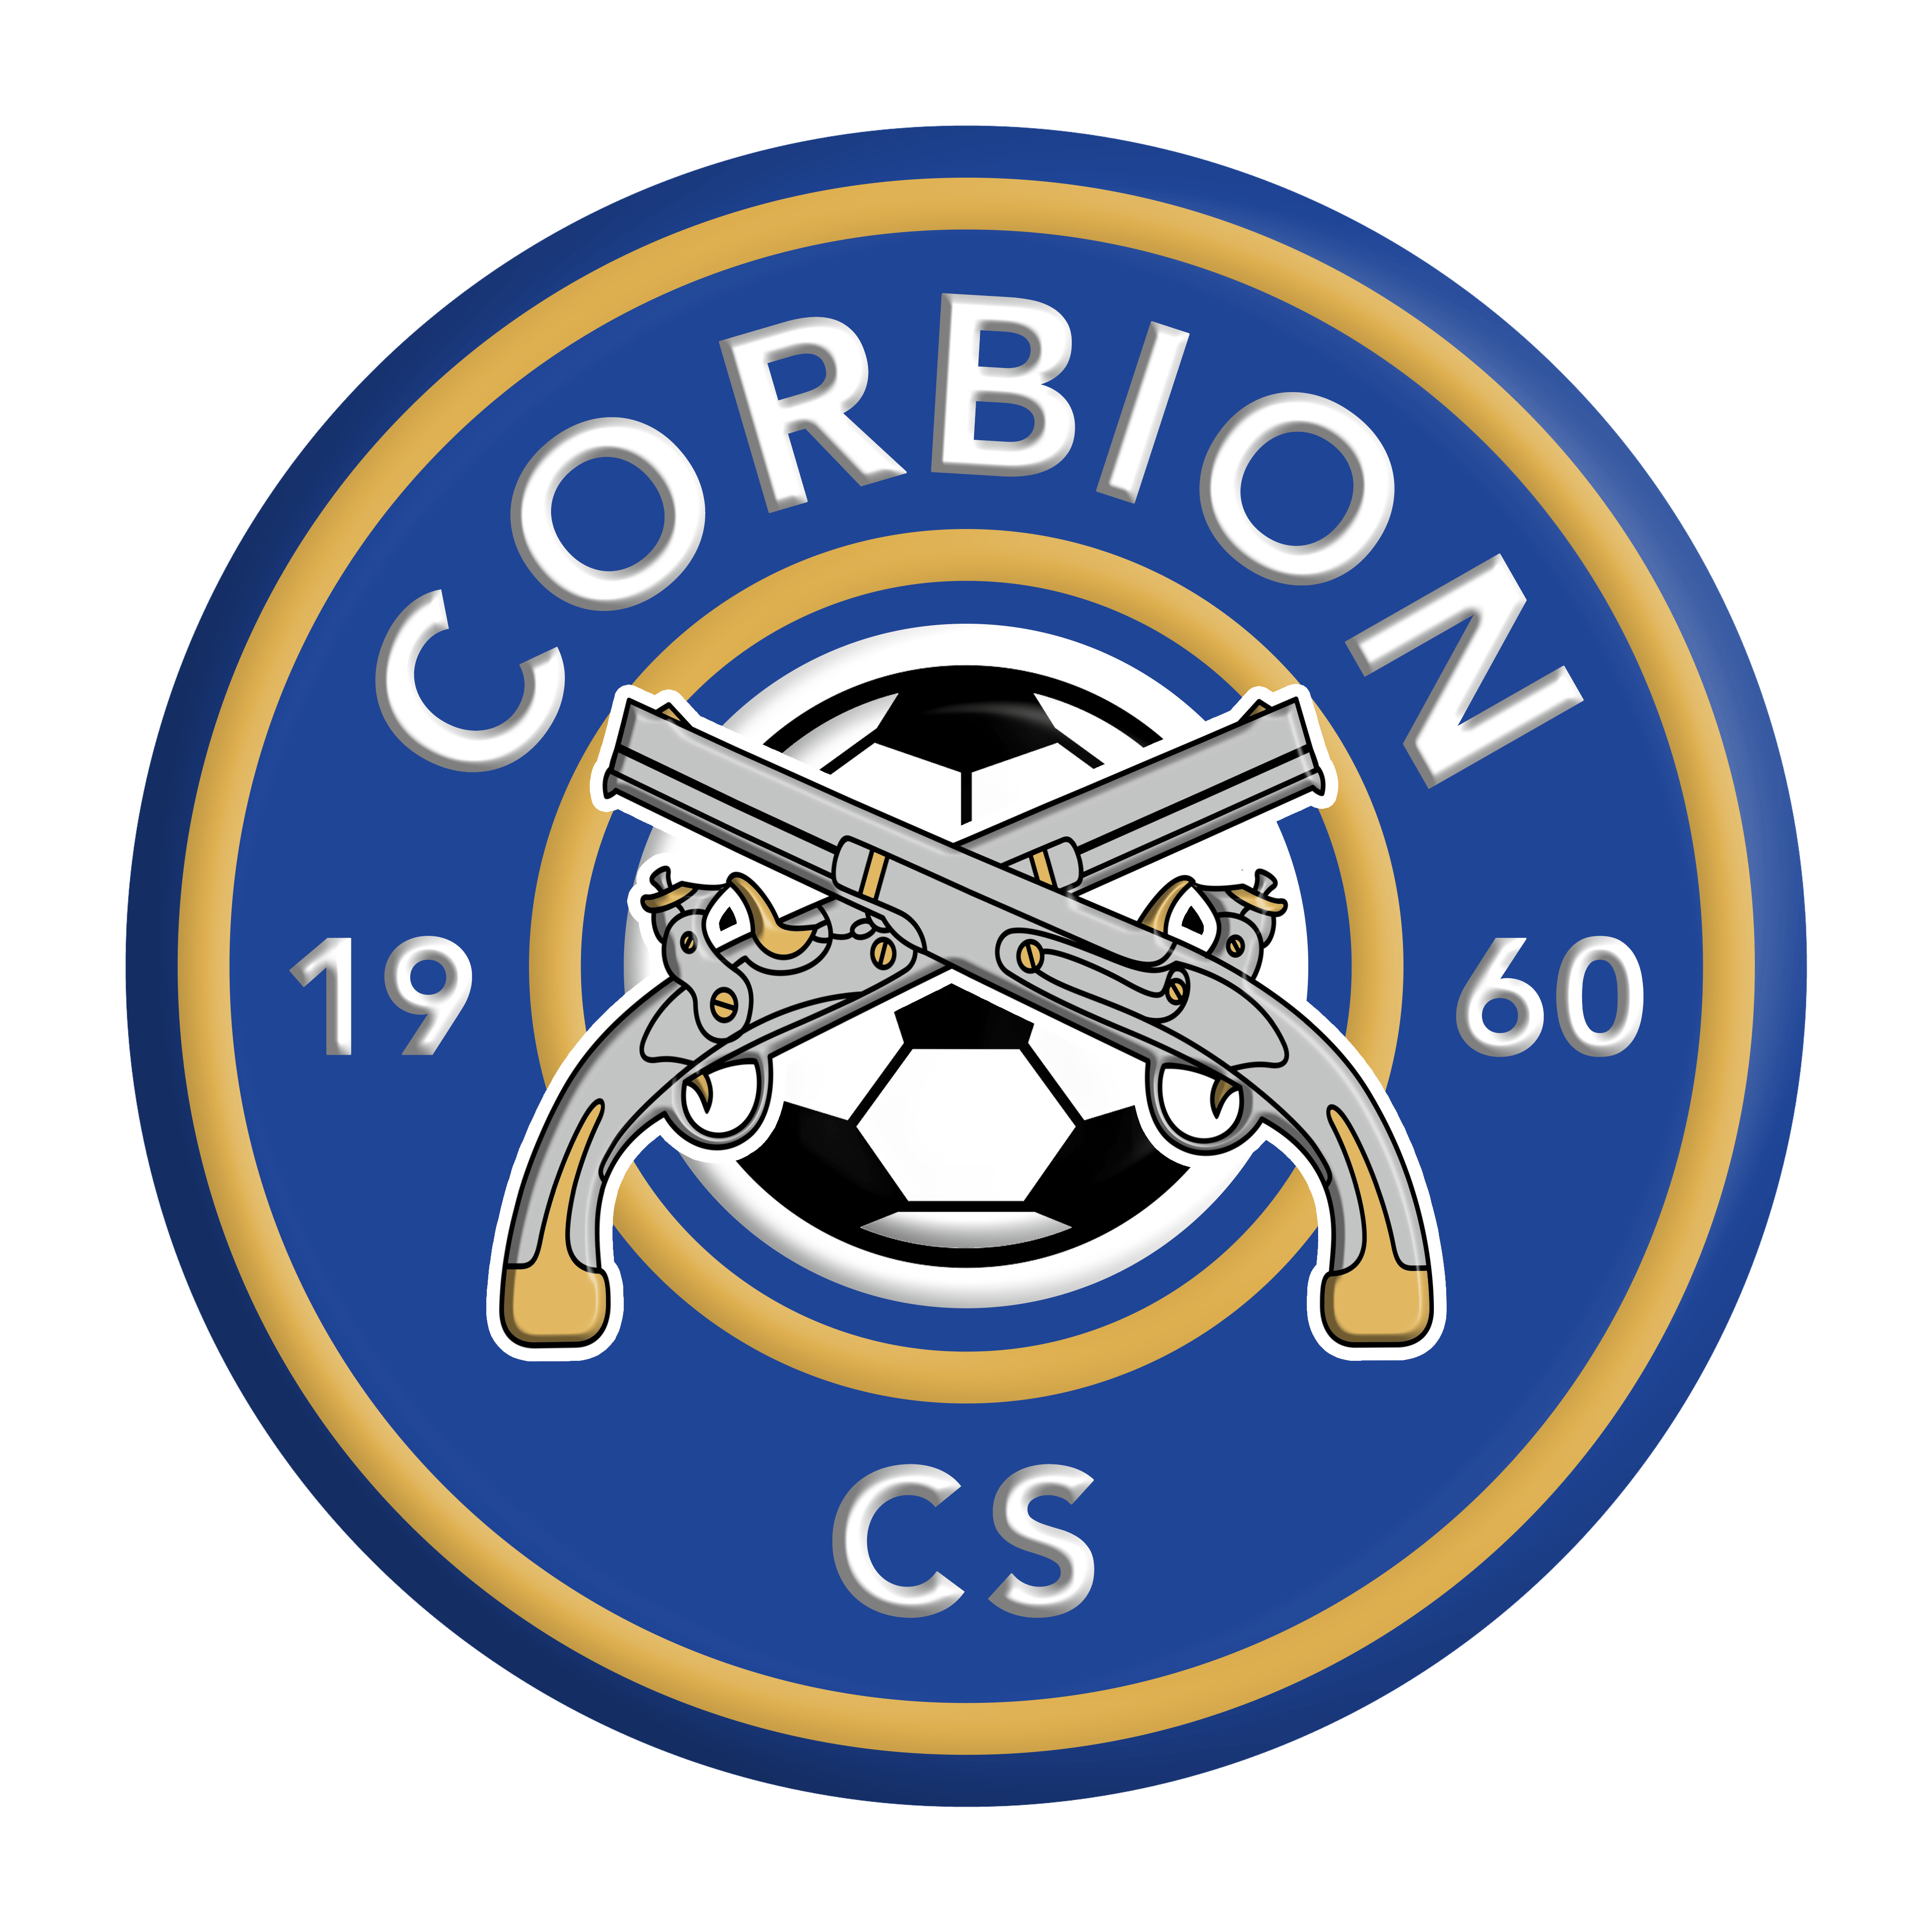 5 - Corbion